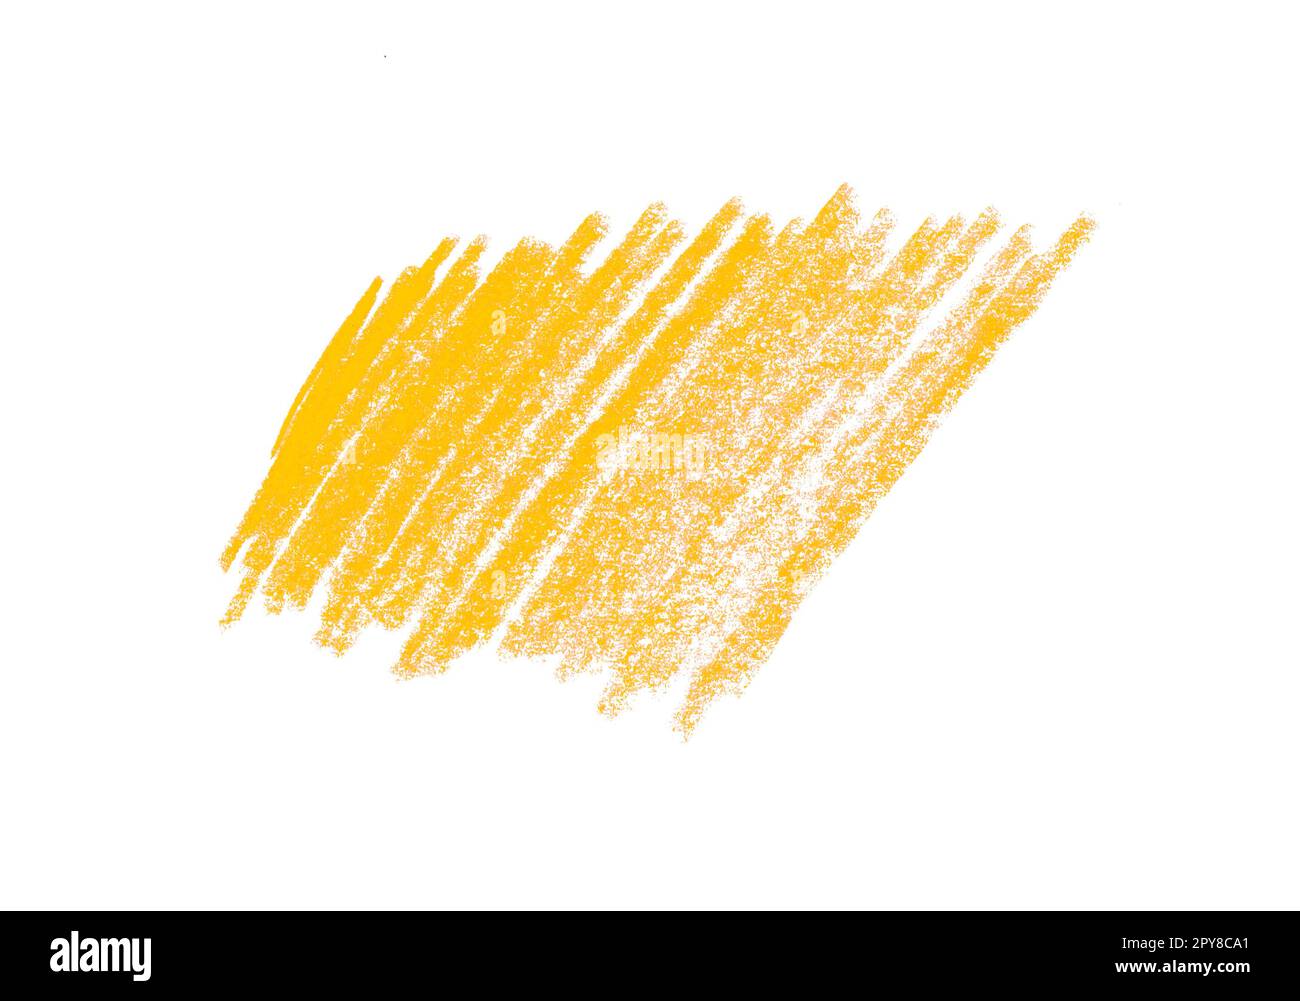 Gekritzelte Buntstift Streifen in arancio gelbo ali Kritzelei oder Gekritzel auf weißem Hintergrund Foto Stock